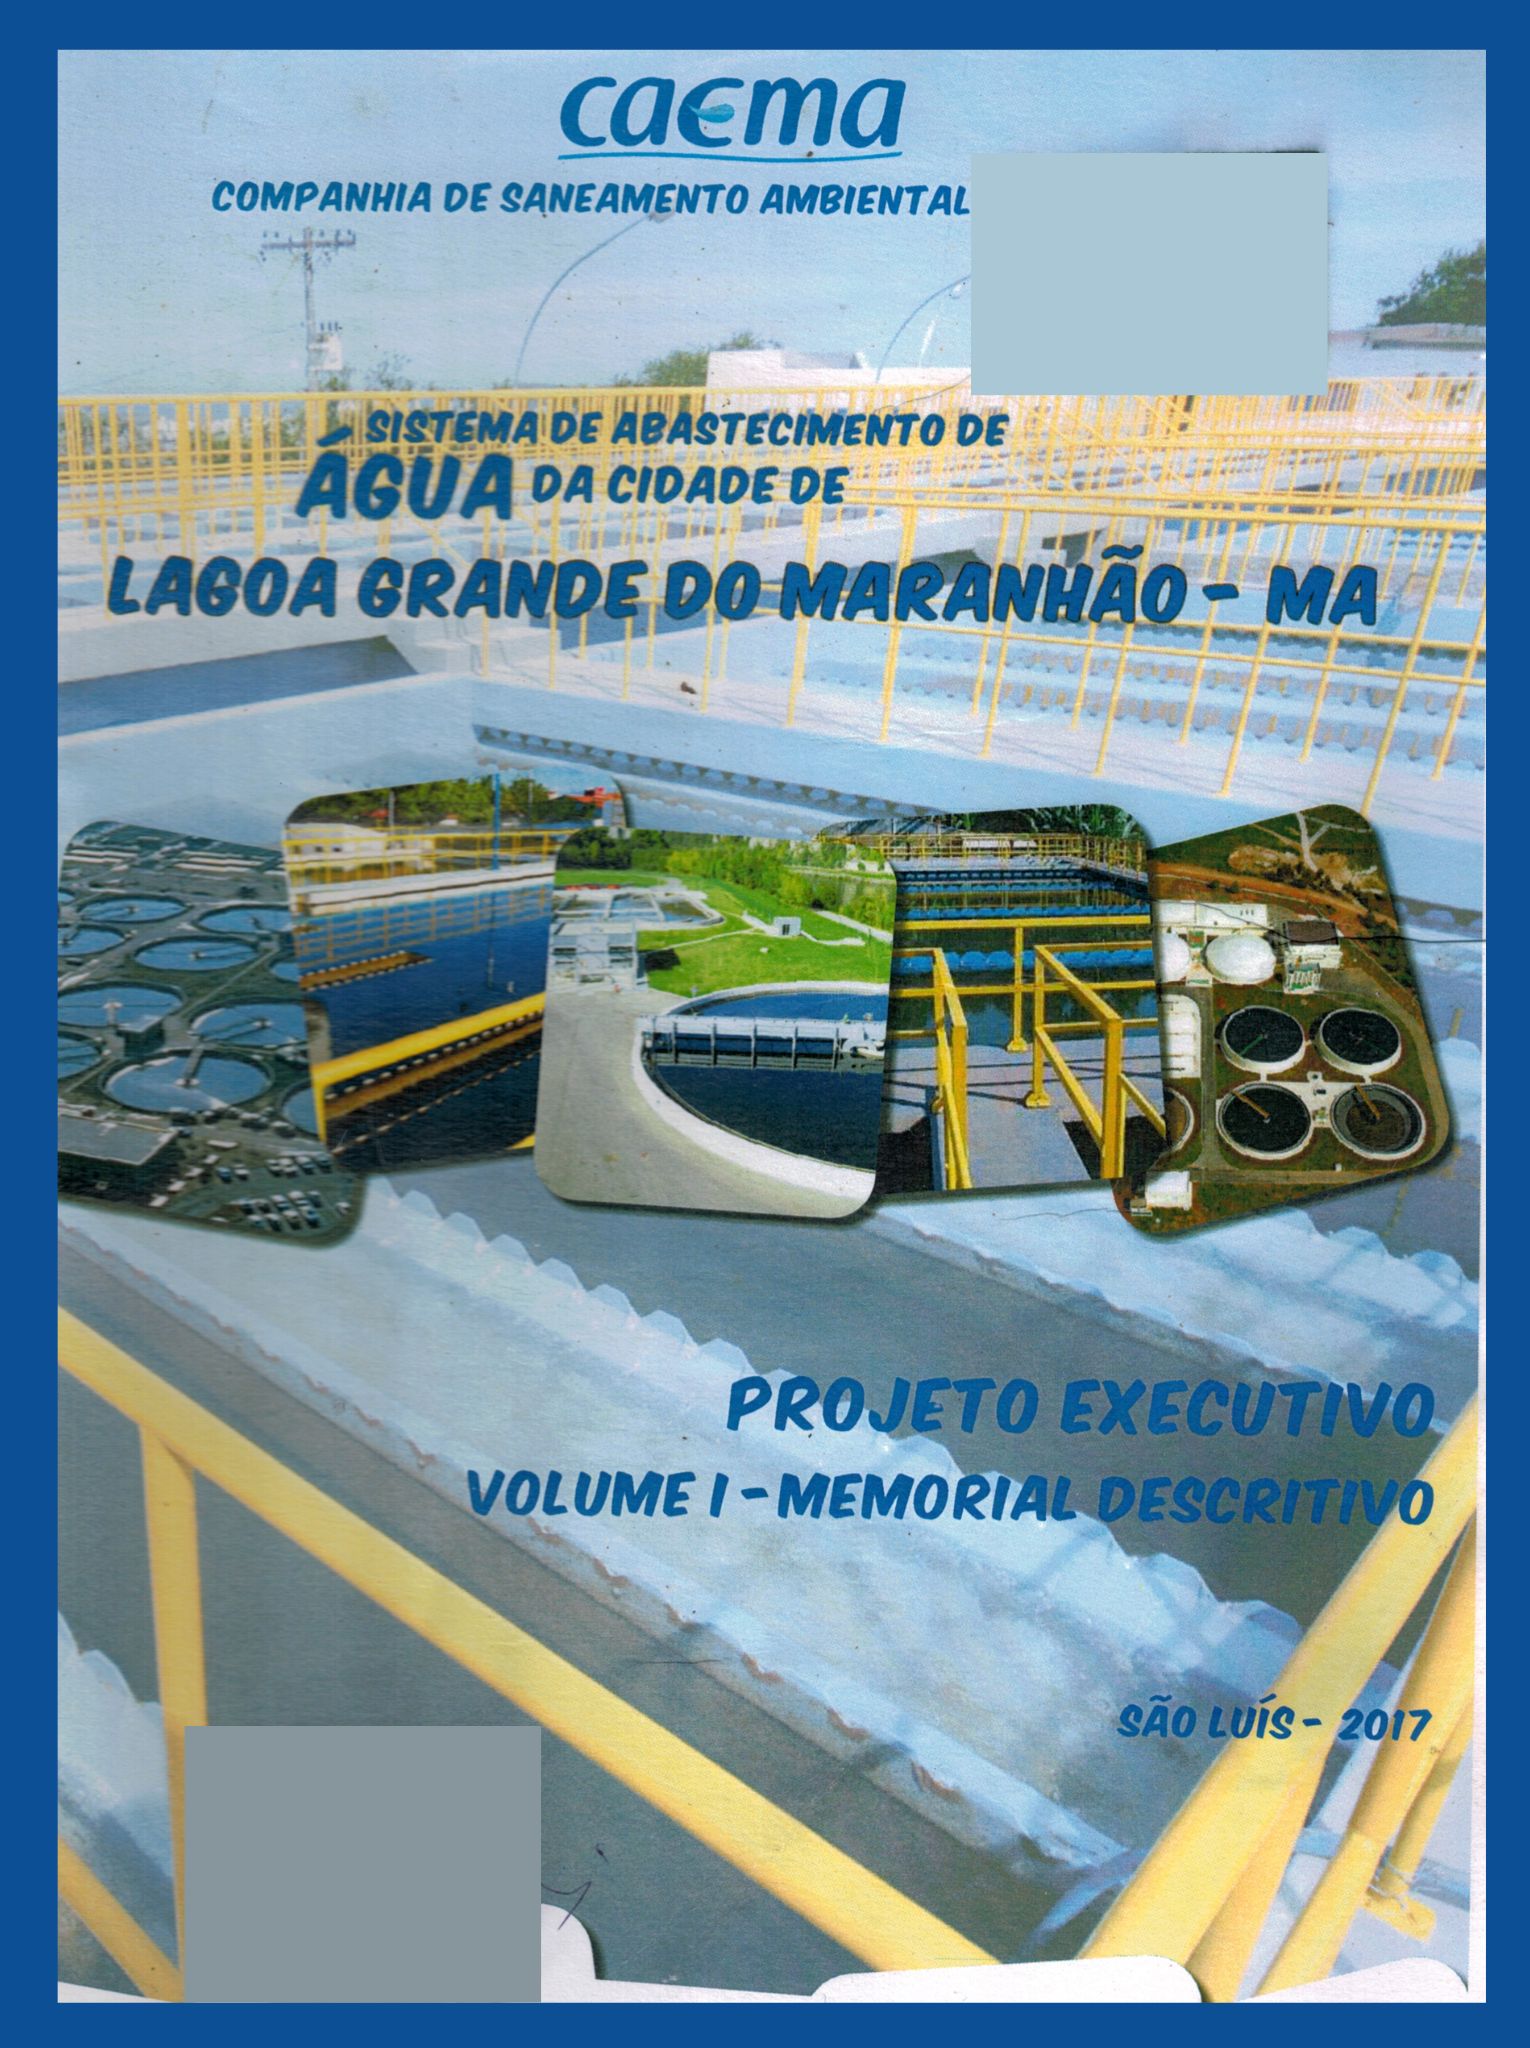 Imagem da capa do Projeto Técnico contendo título e autoria.